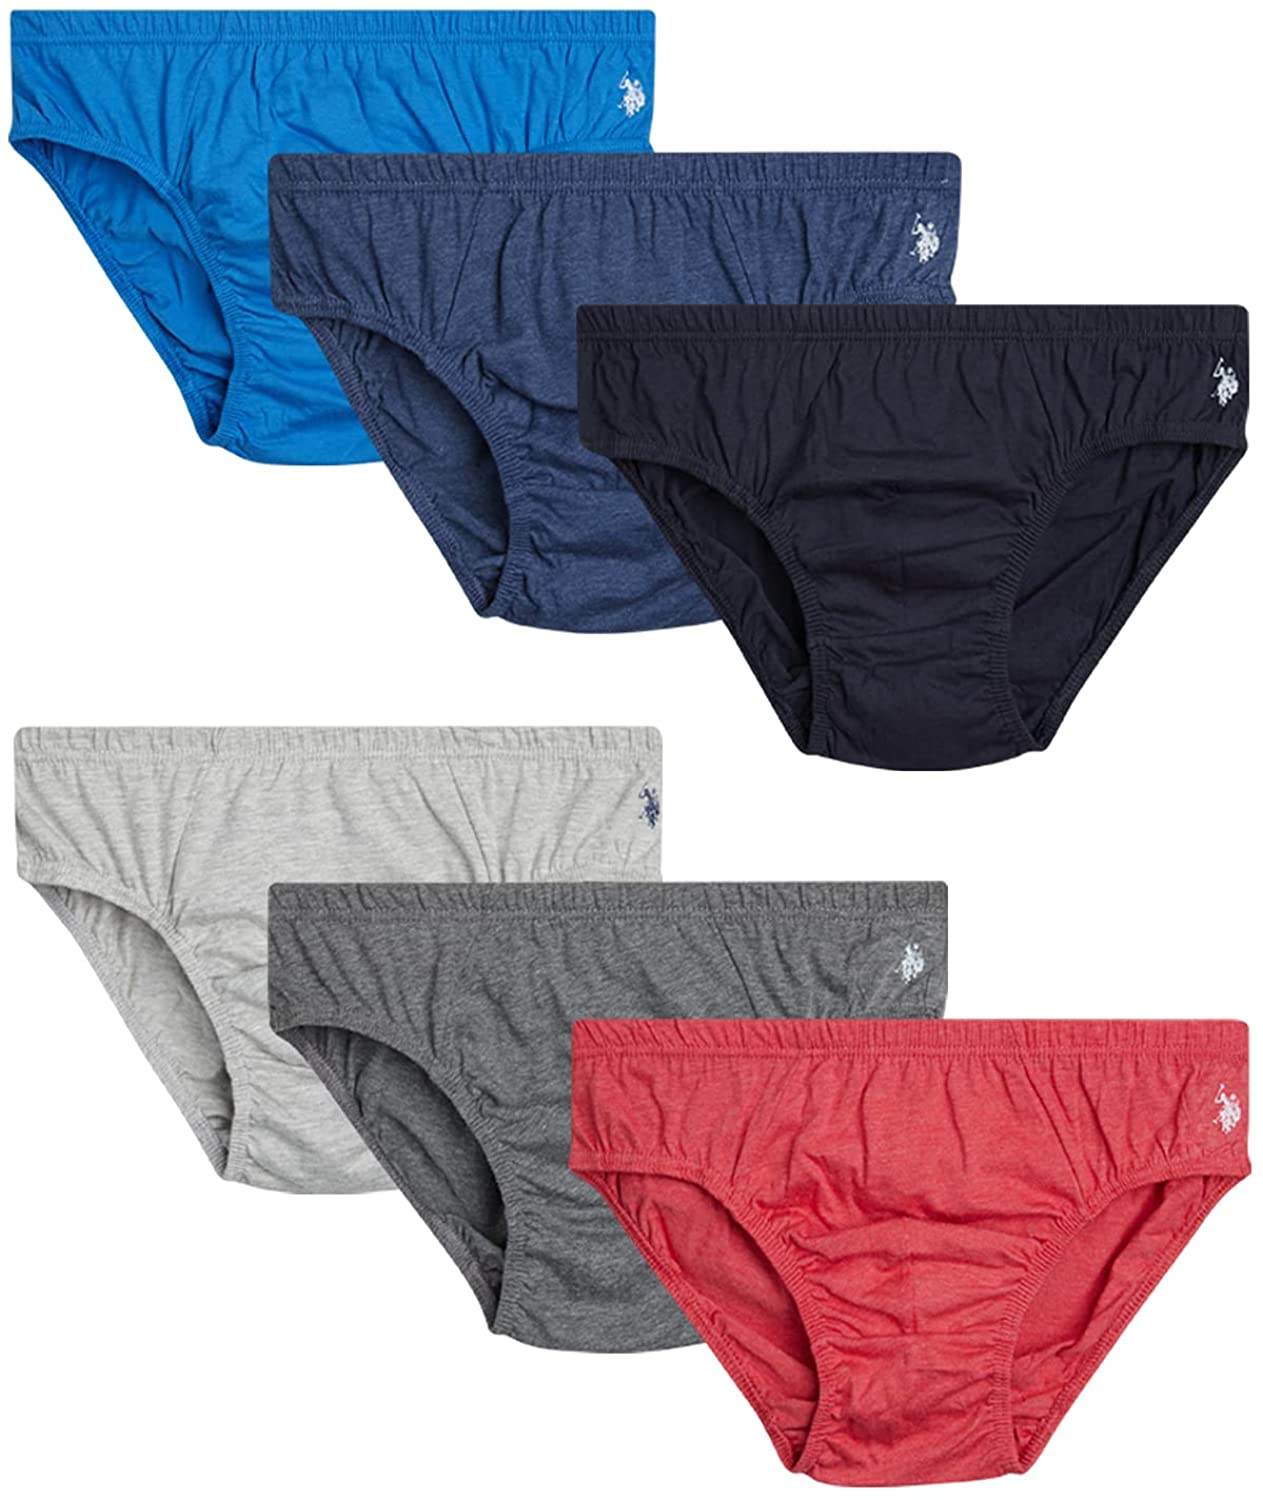 U.S Polo Assn 12 Pack Men’s Underwear – Low Rise Briefs with Contour Pouch 